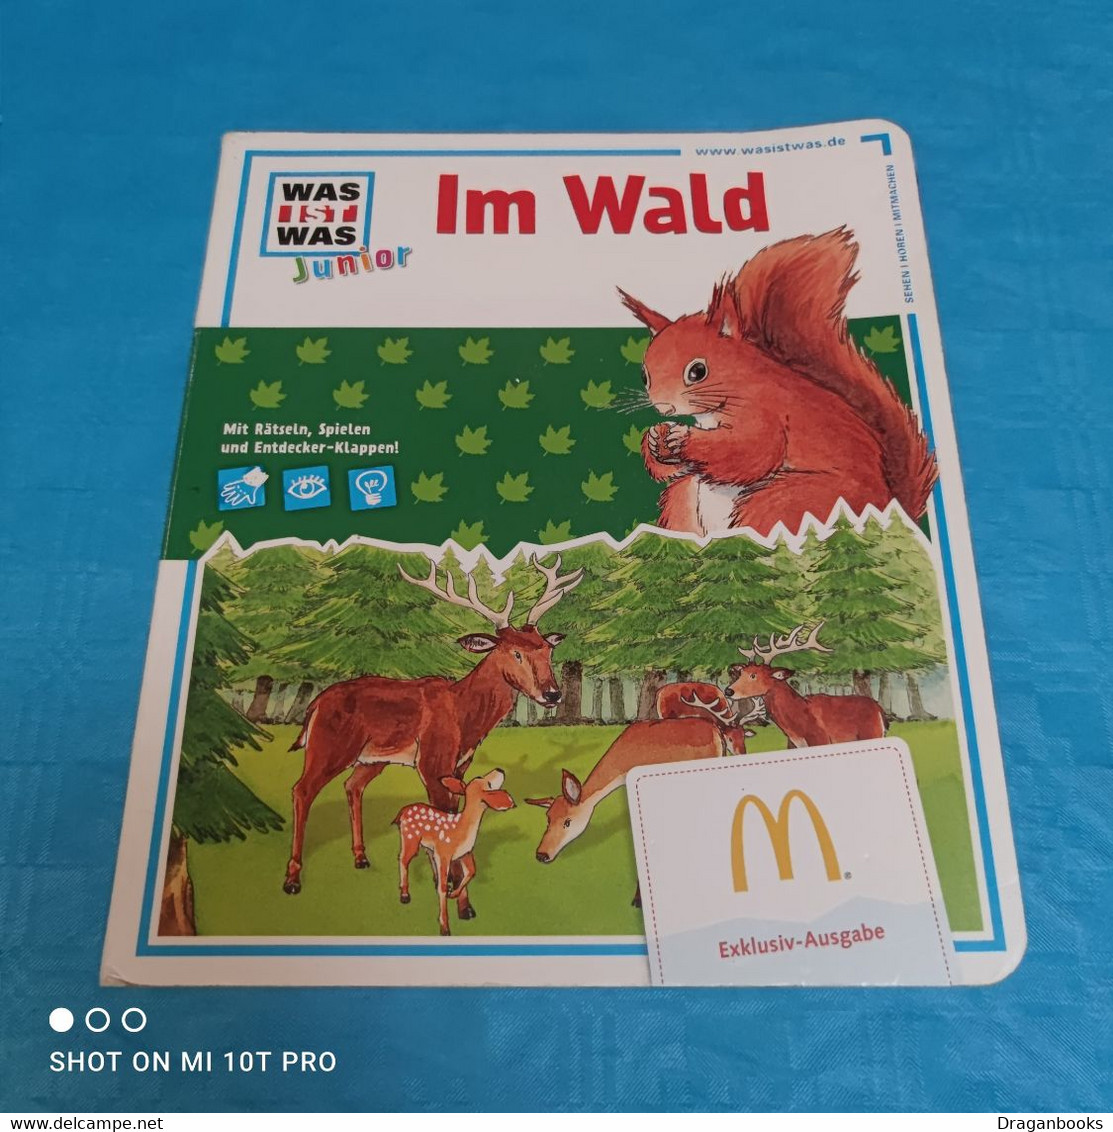 Was Ist Was Junior - Im Wald - Picture Book